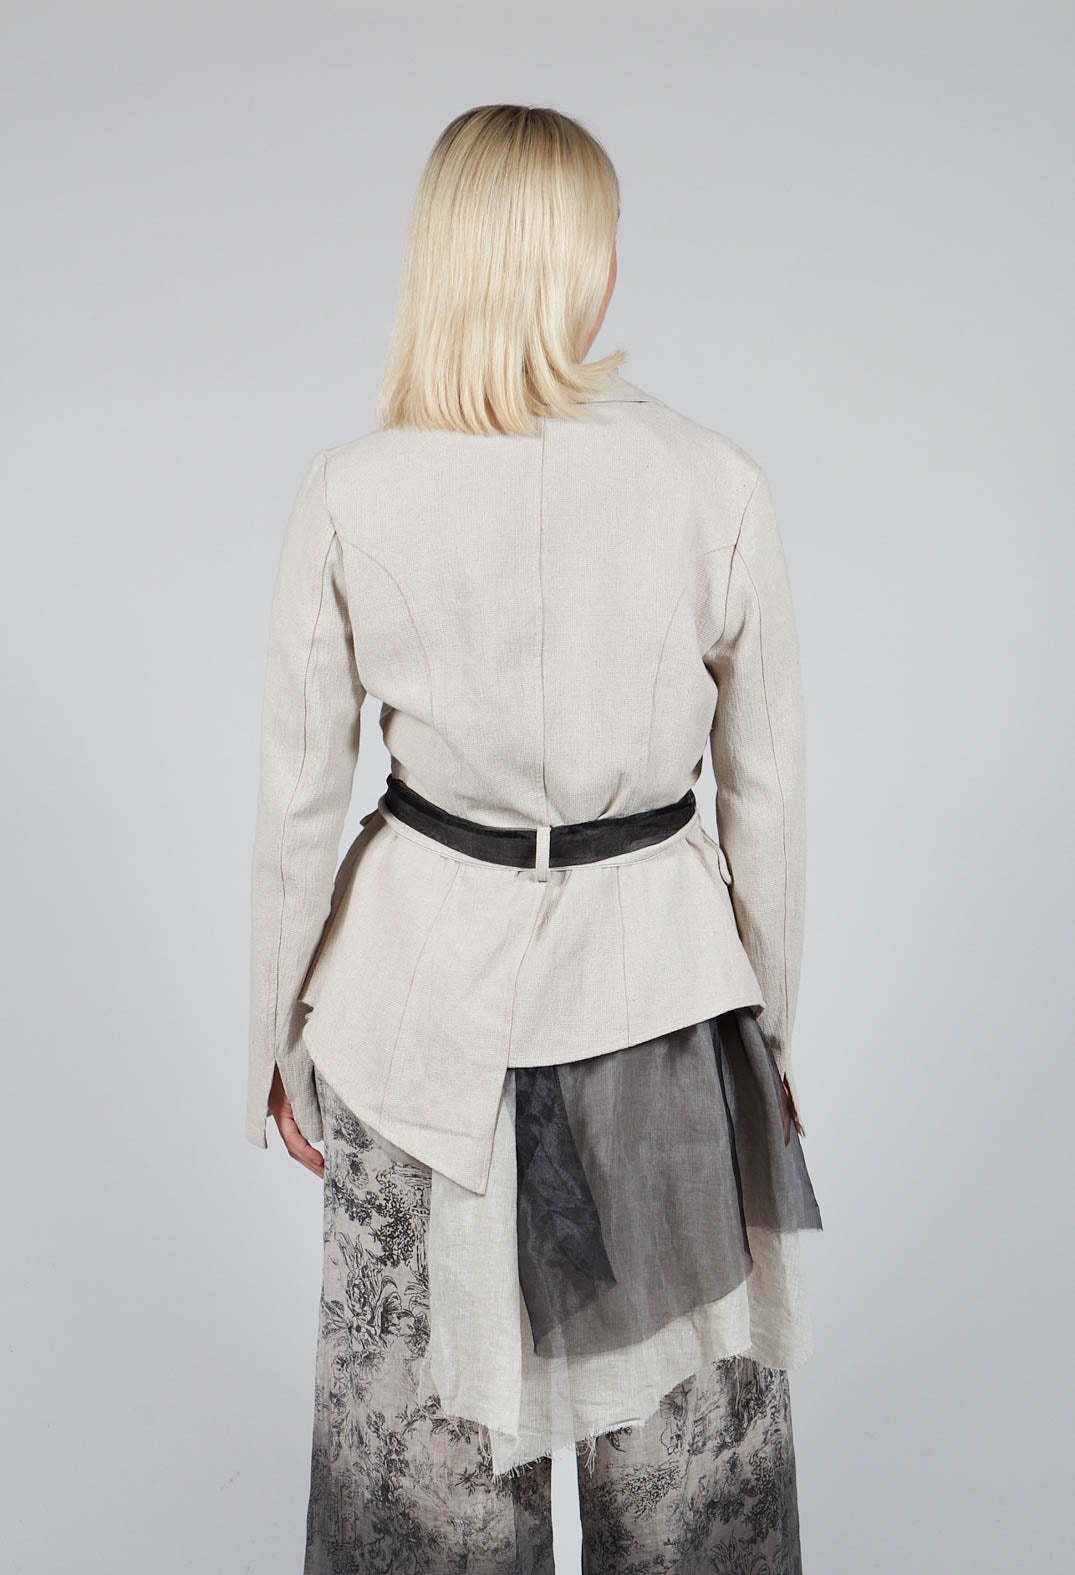 Belted Linen Jacket in Ecru